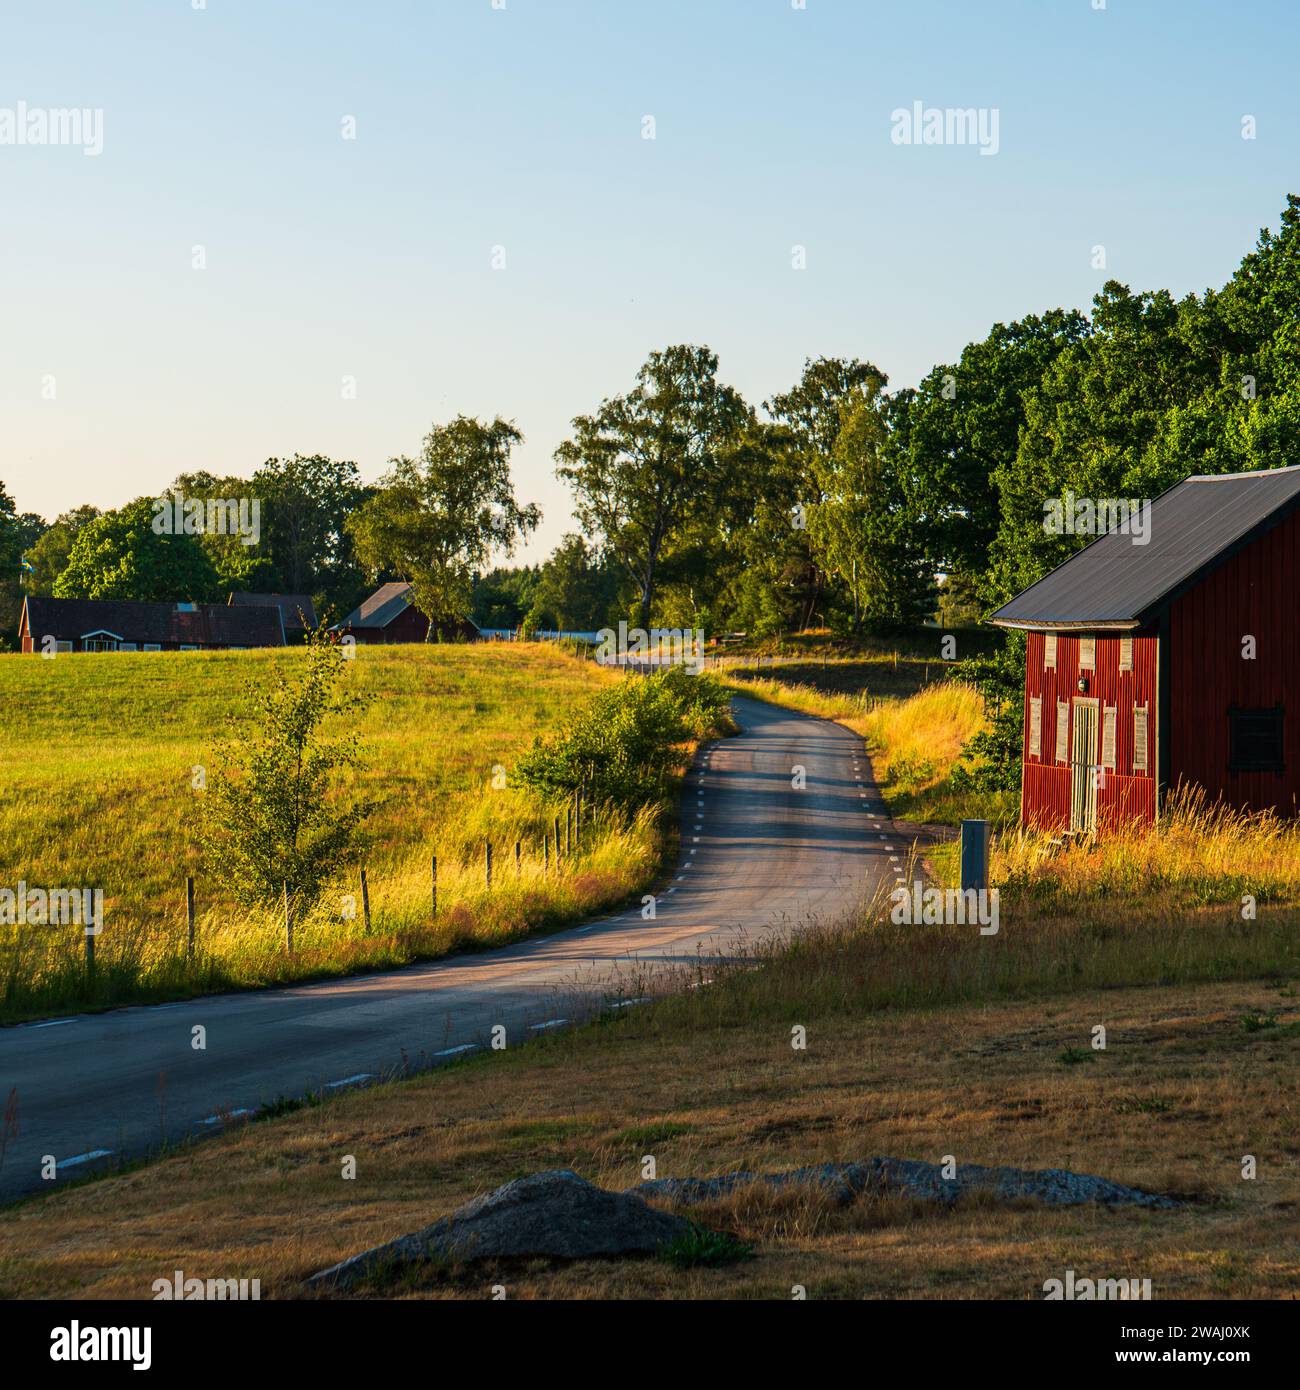 Strada di campagna nel sud della Svezia vicino a Vittsjö, con una casa rossa e campi verdi, sole nel tardo pomeriggio, alberi, cielo blu, erba secca. Foto Stock